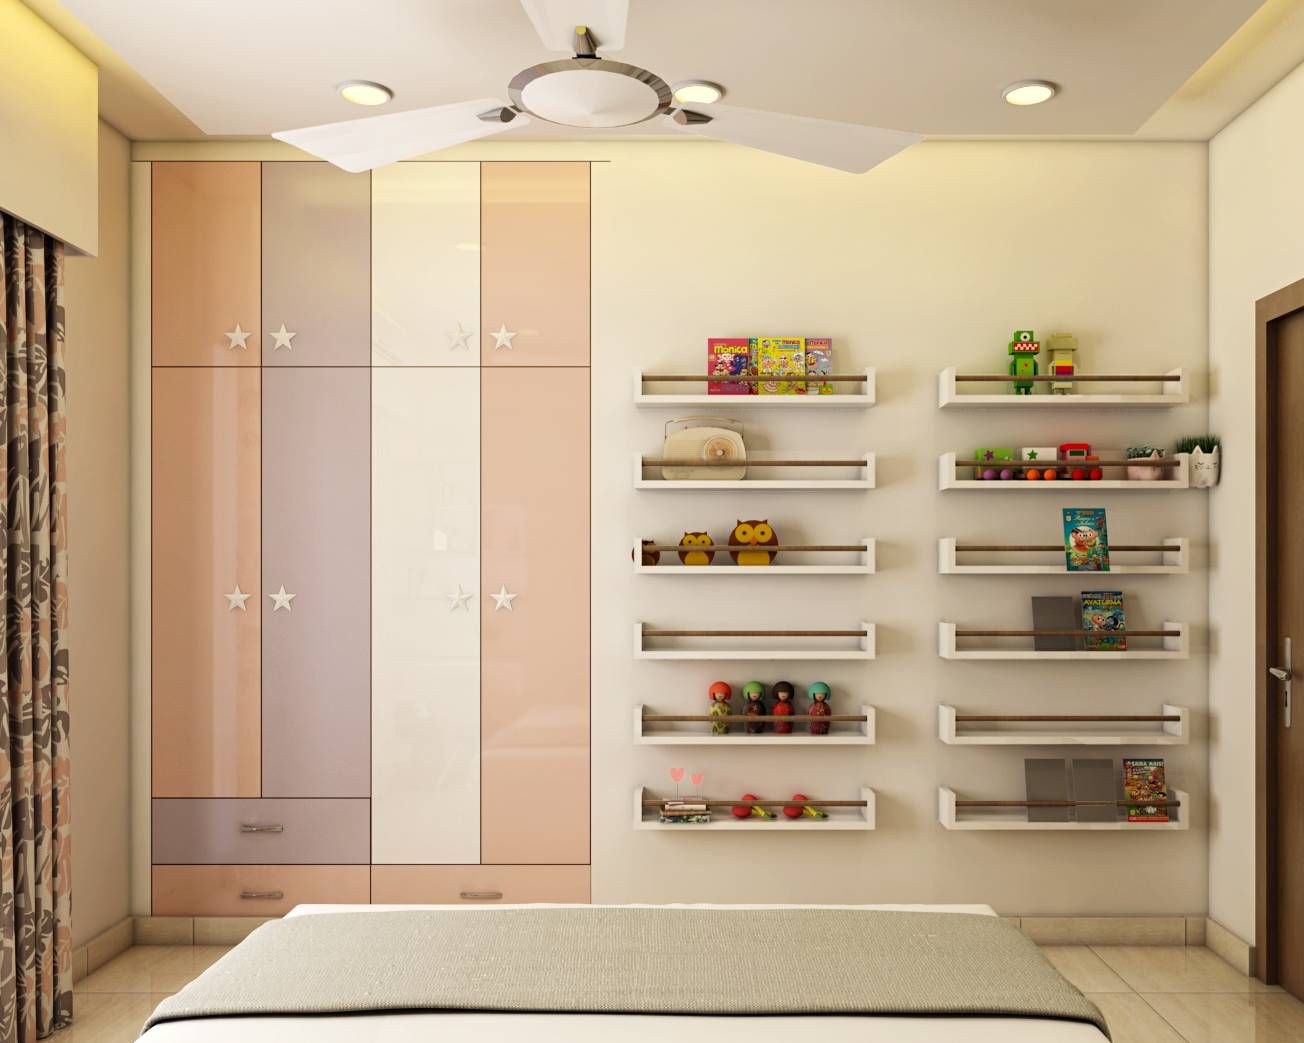 4-Door Wardrobe Design With Open Shelves | Livspace